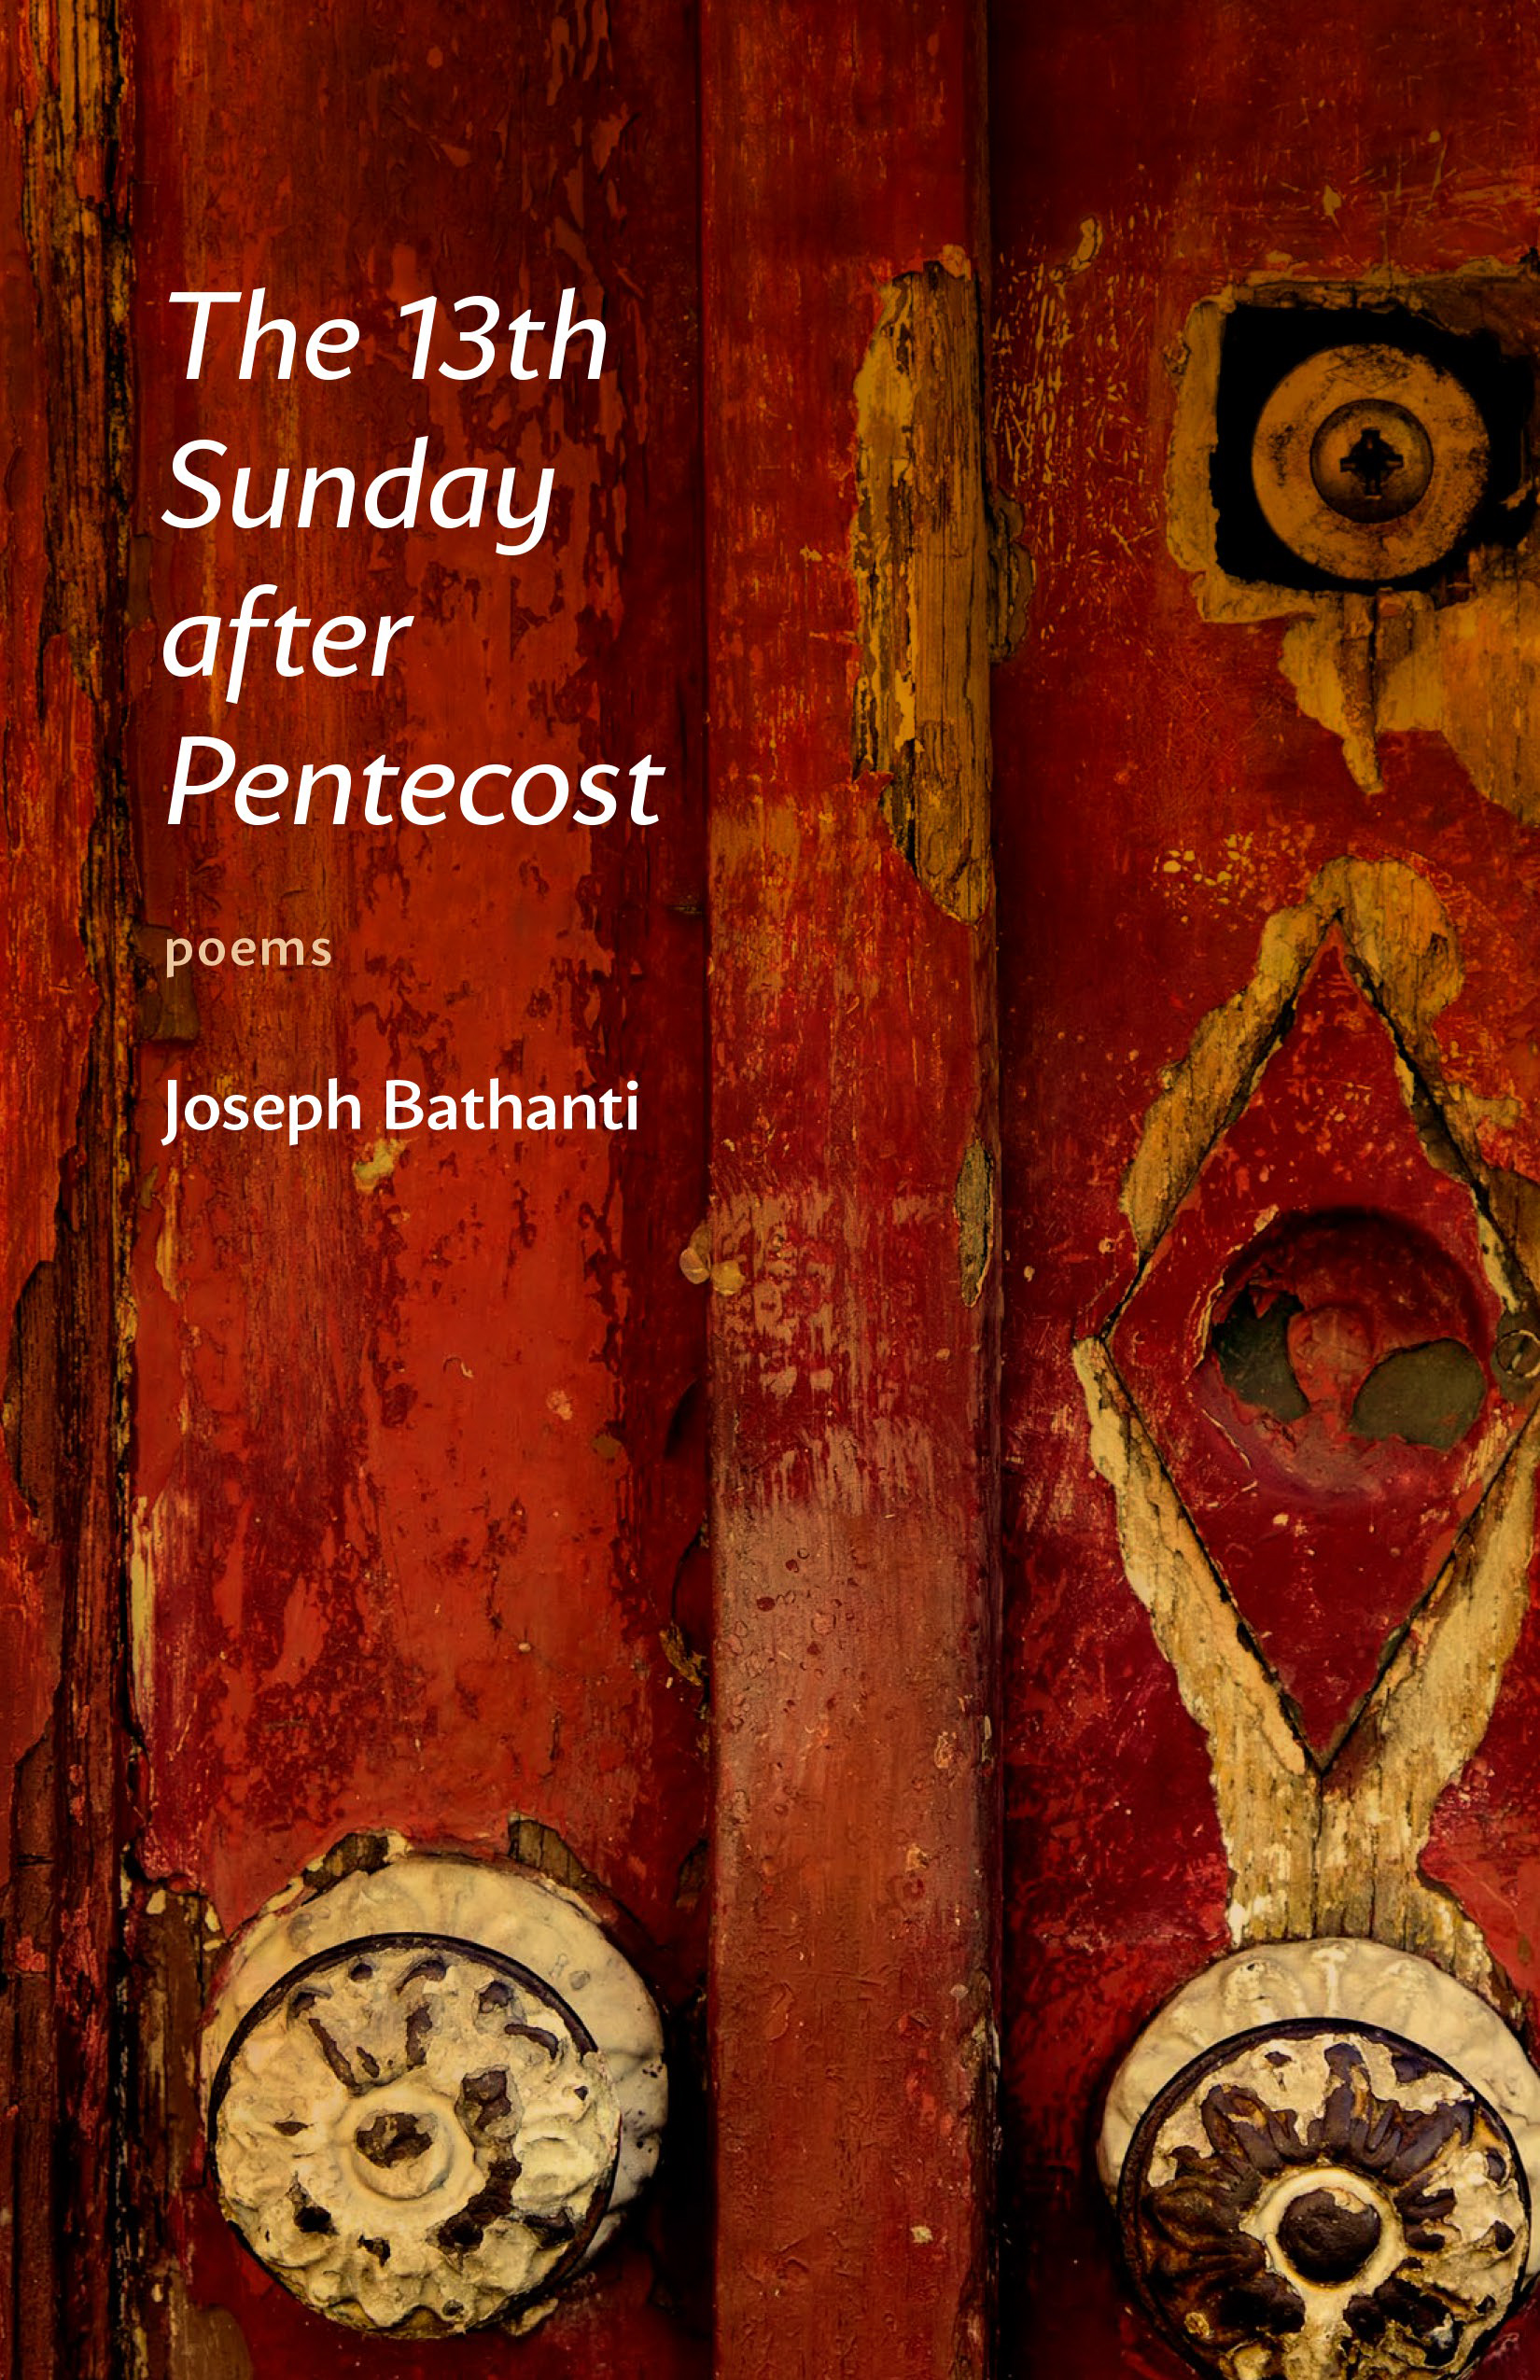 Joseph Bathanti's "The 13th Sunday after Pentecost"